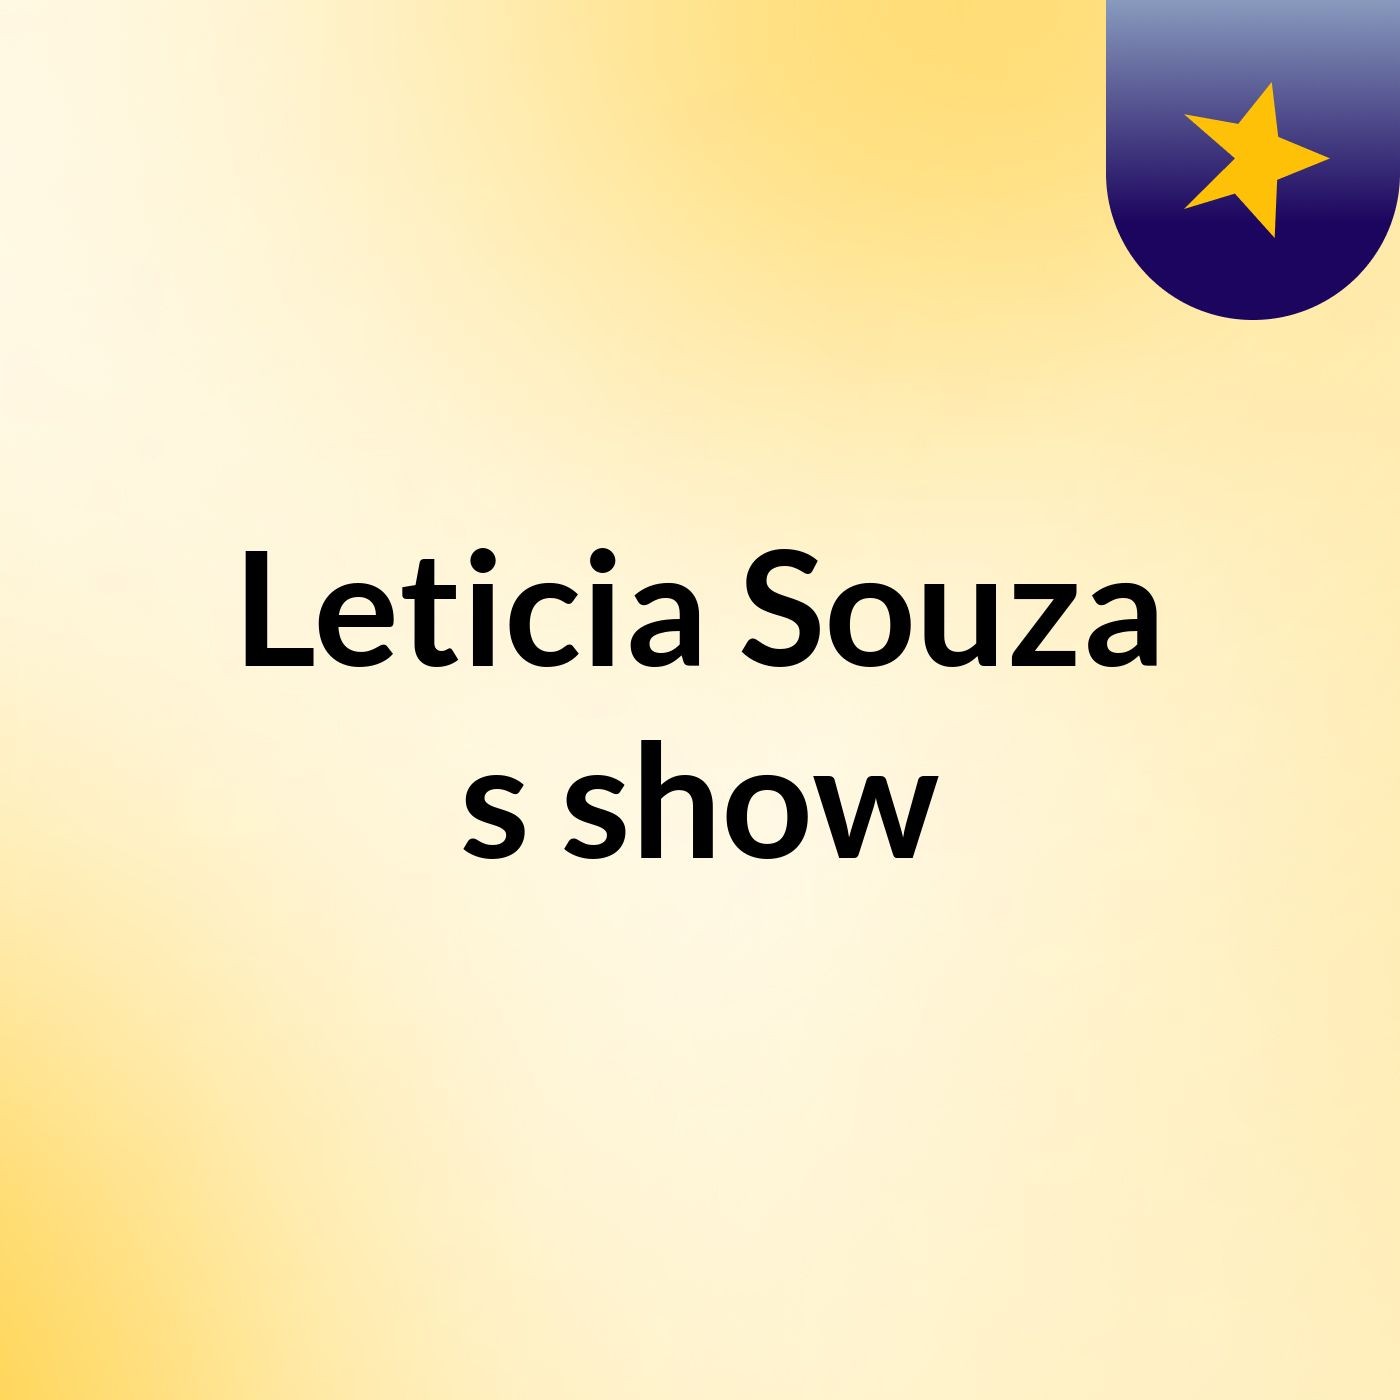 Leticia Souza's show